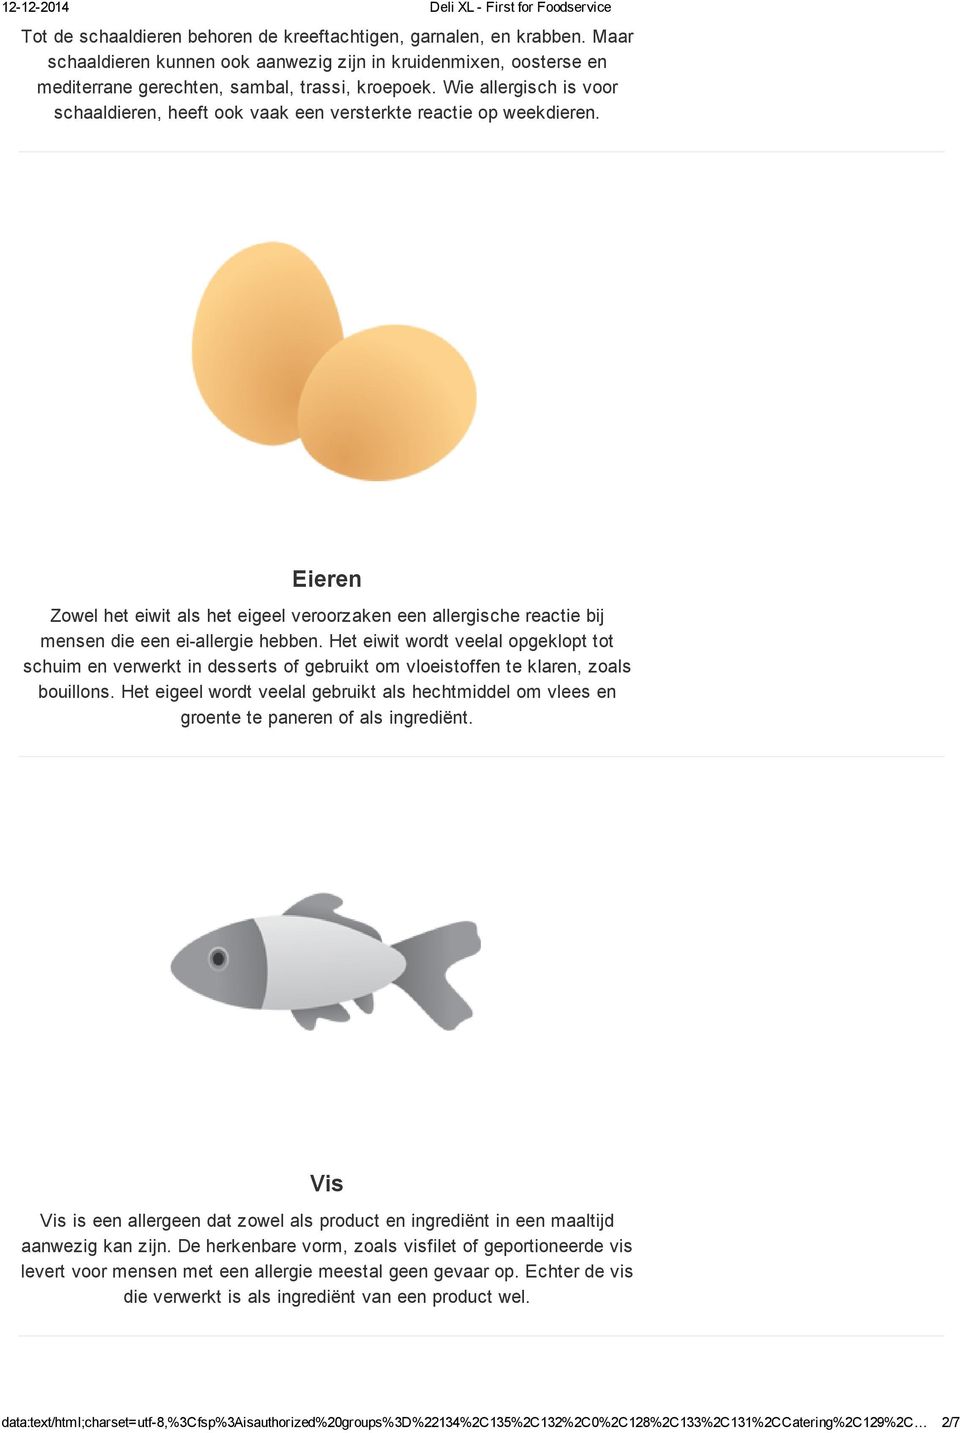 Eieren Zowel het eiwit als het eigeel veroorzaken een allergische reactie bij mensen die een ei allergie hebben.